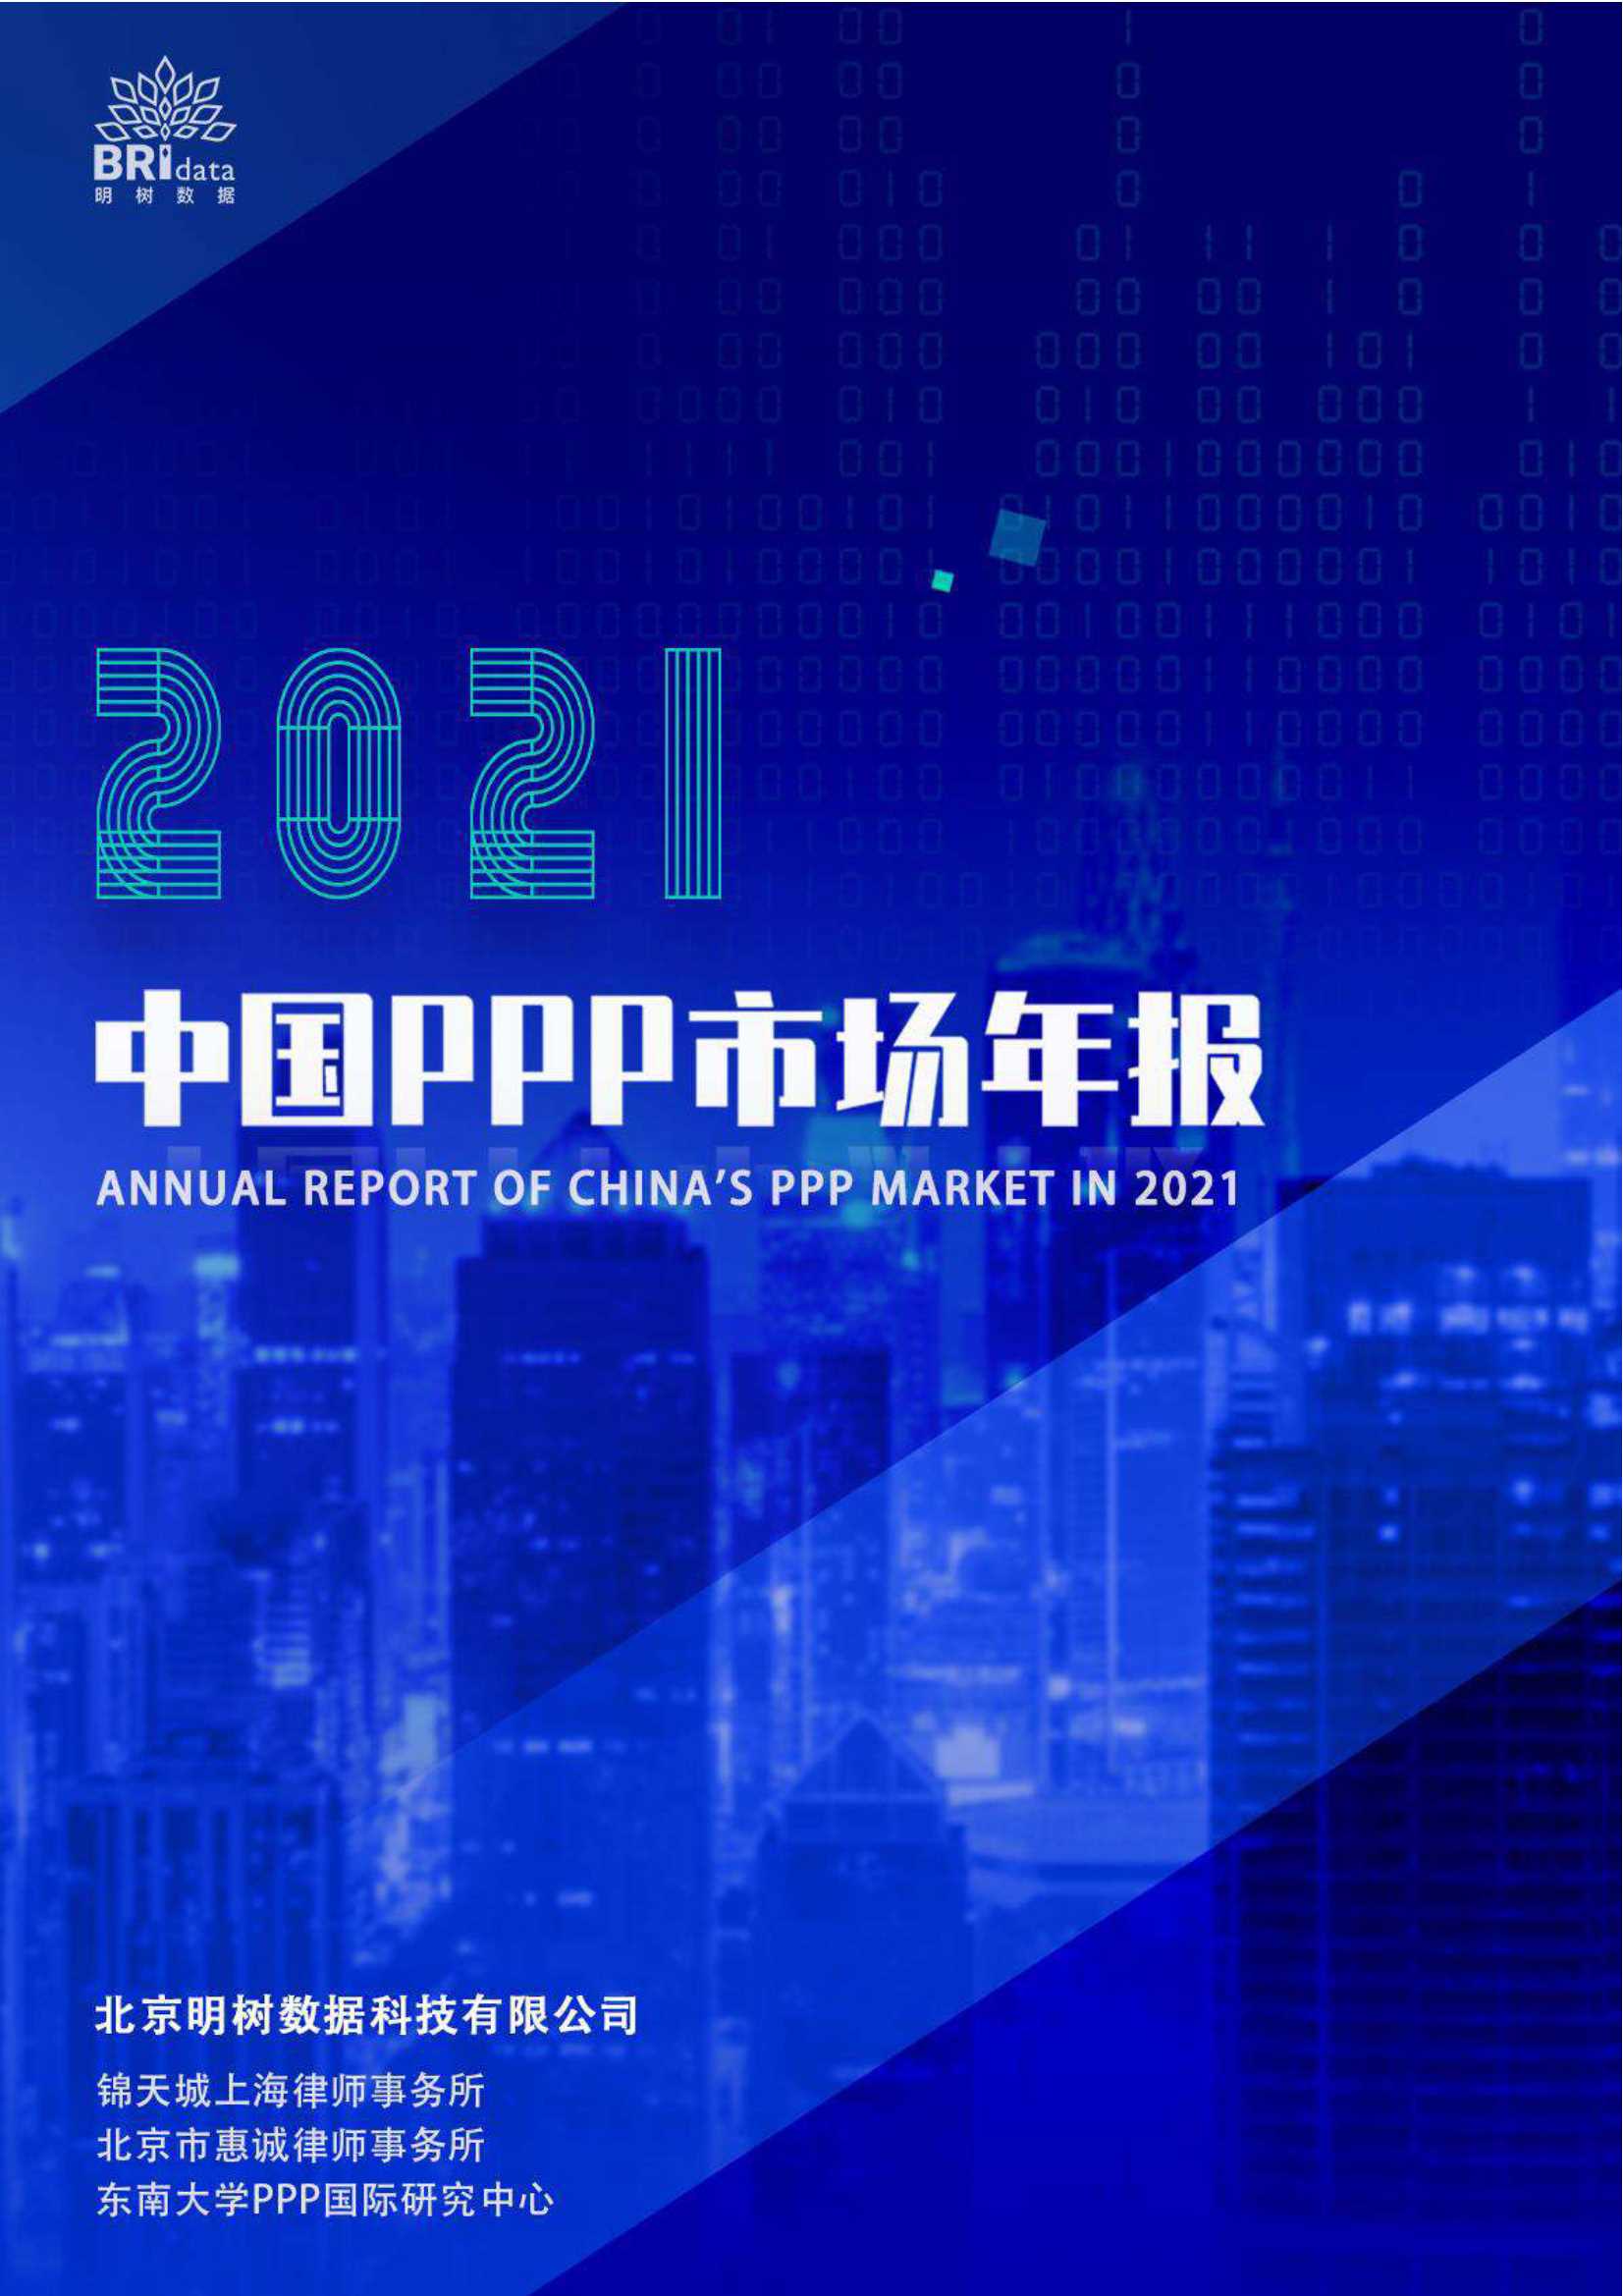 明树数据-2021年中国PPP市场年报-2022.01-141页